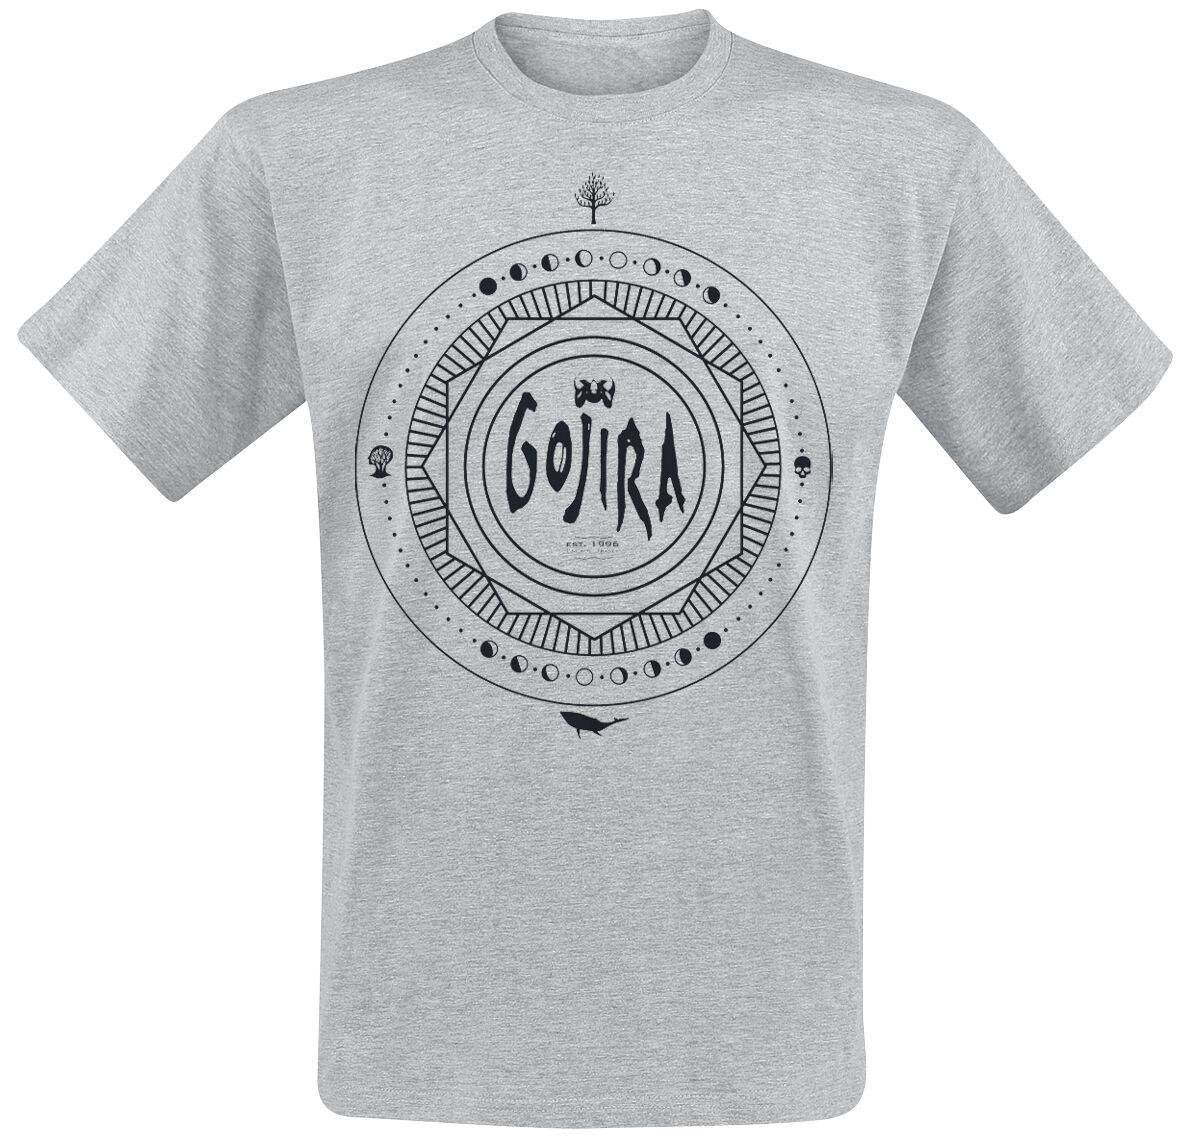 Gojira T-Shirt - Moon Phases - S bis XL - für Männer - Größe S - grau meliert  - Lizenziertes Merchandise! von Gojira